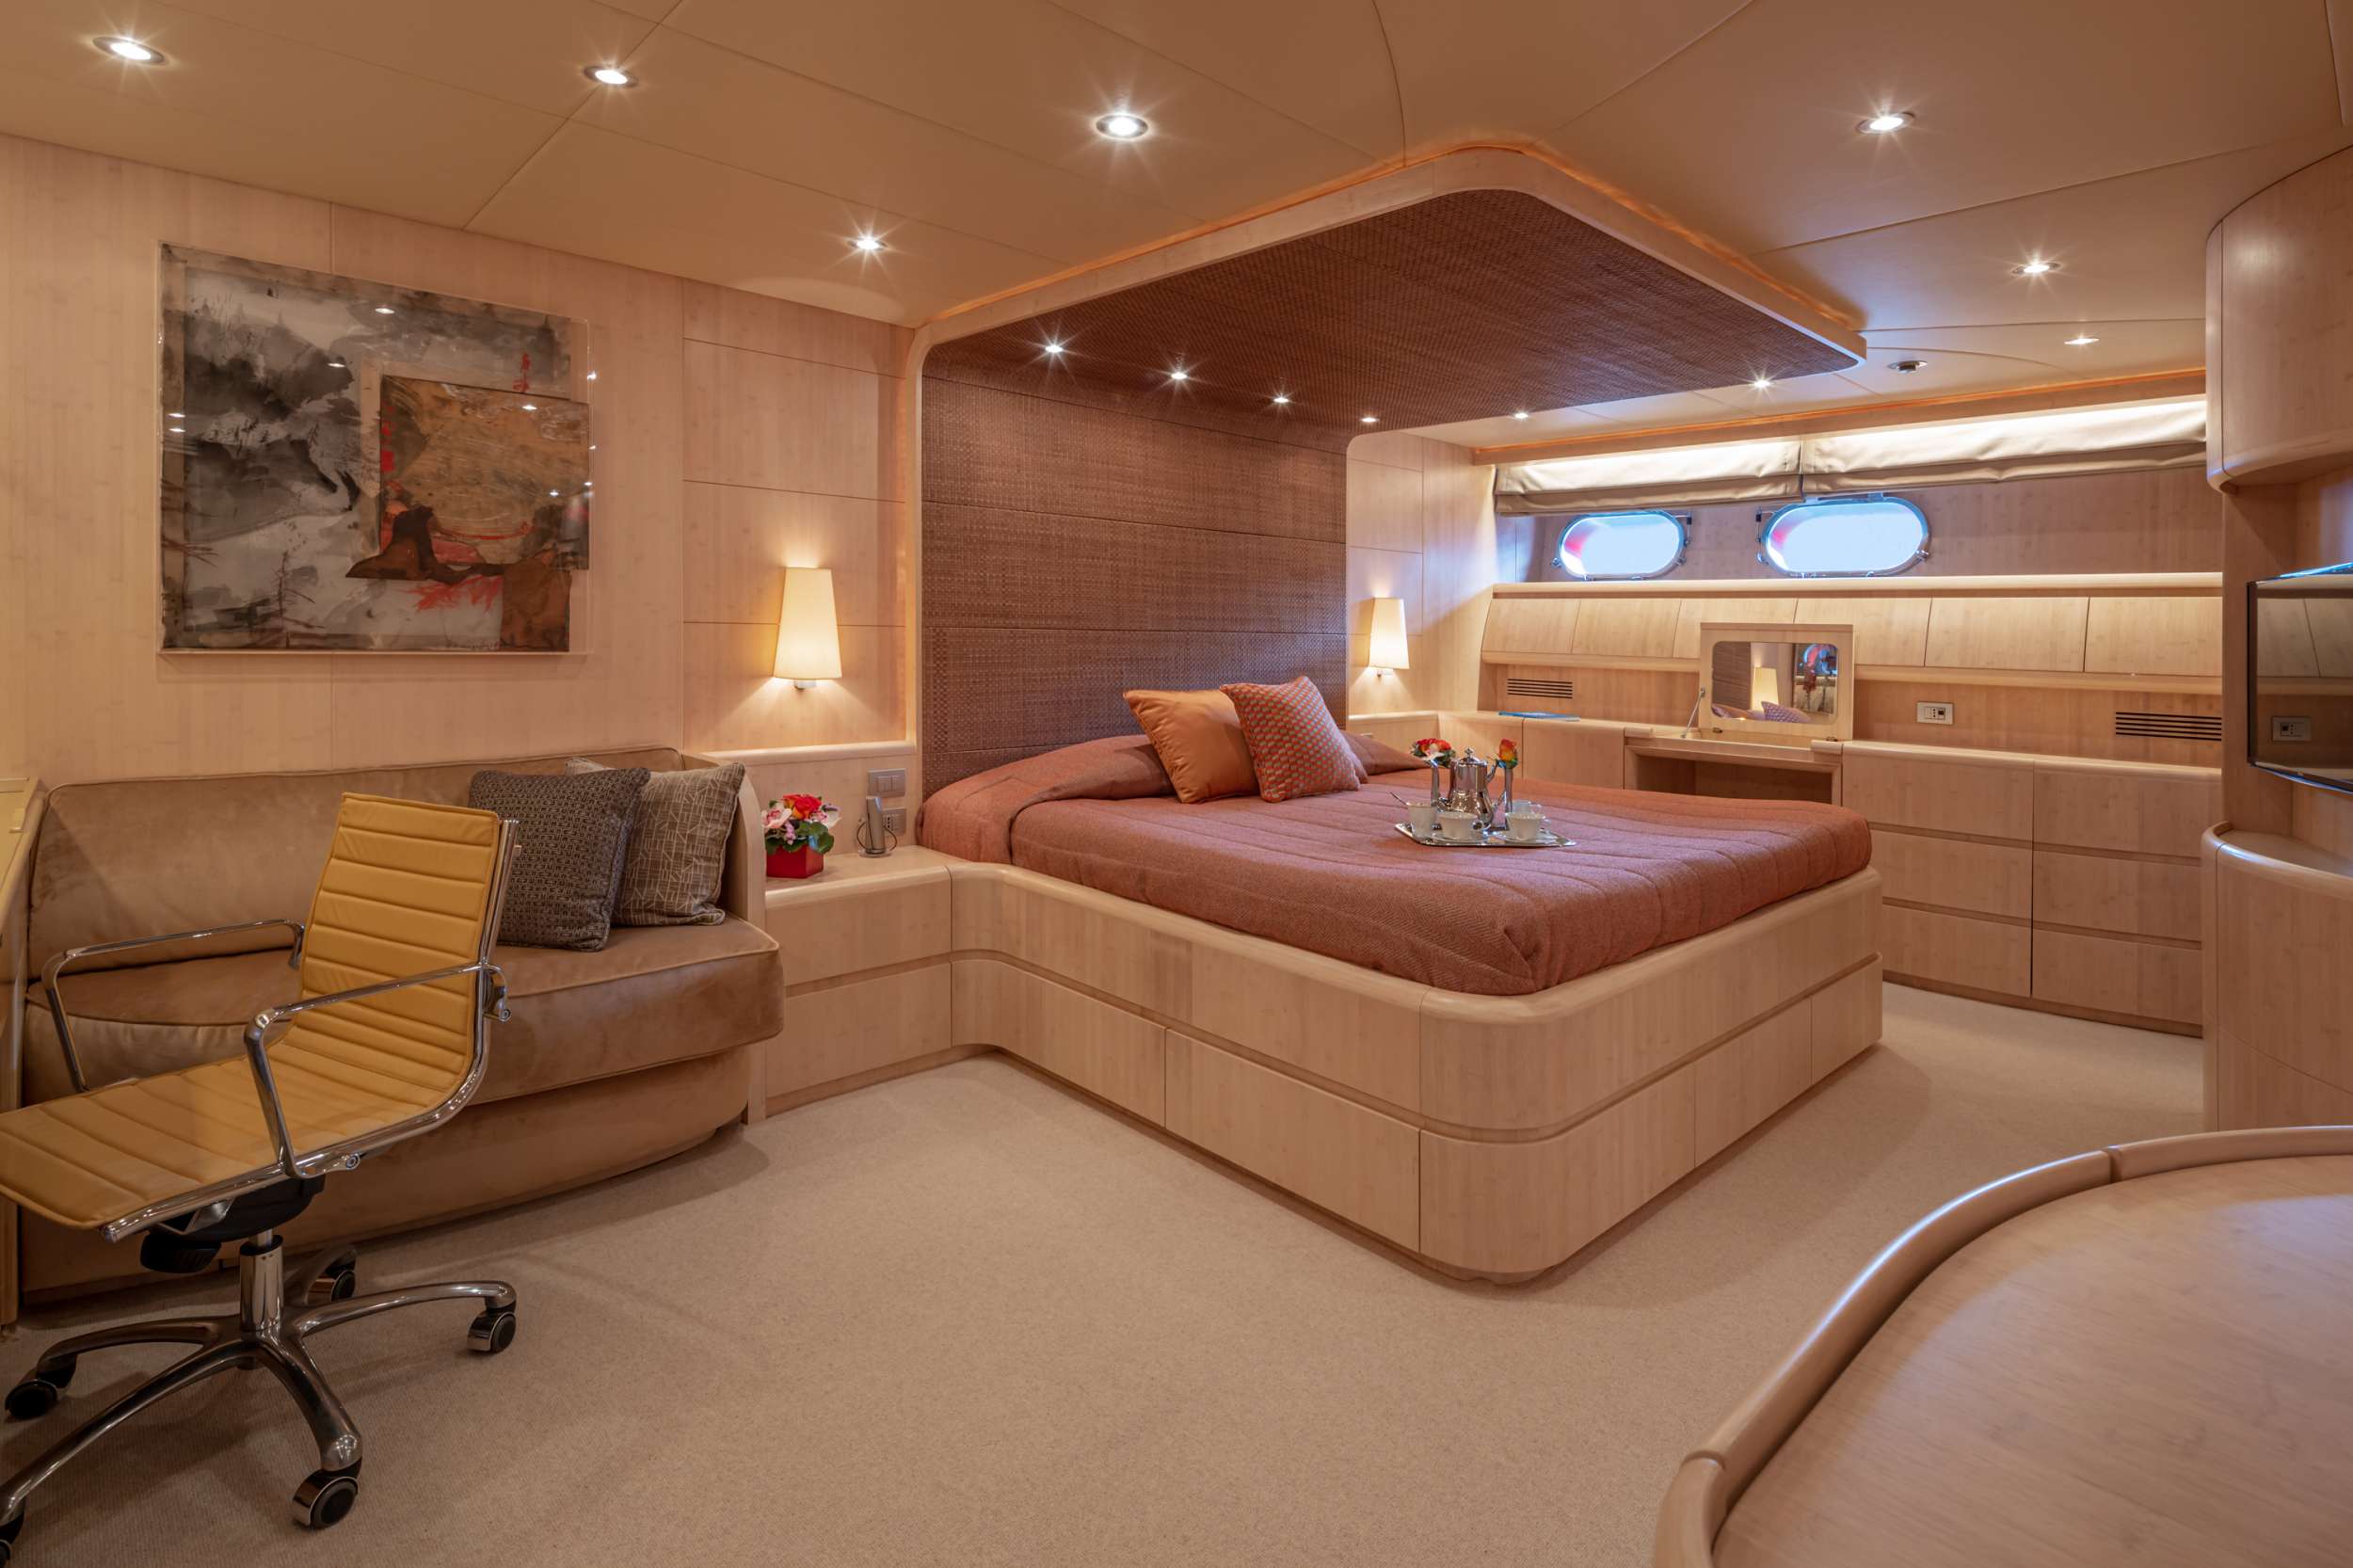 GLAROS Yacht Charter - Master cabin